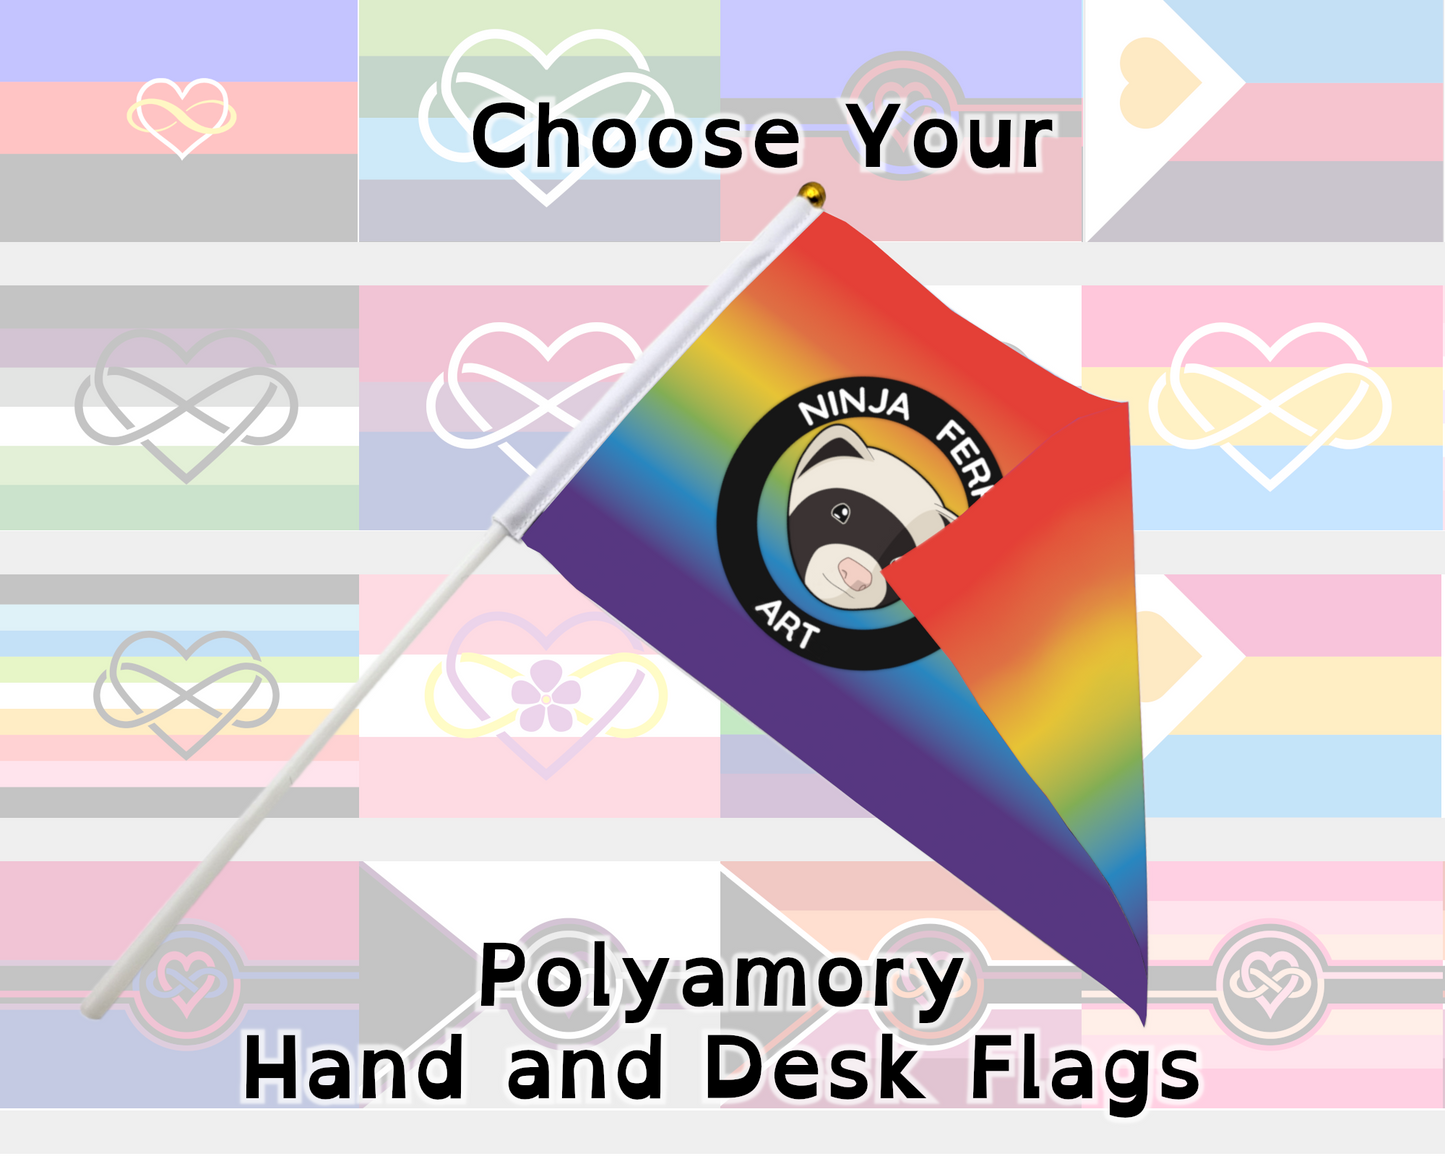 Banderas de mano/escritorio del orgullo poliamoroso | Elige tu bandera | Doble cara